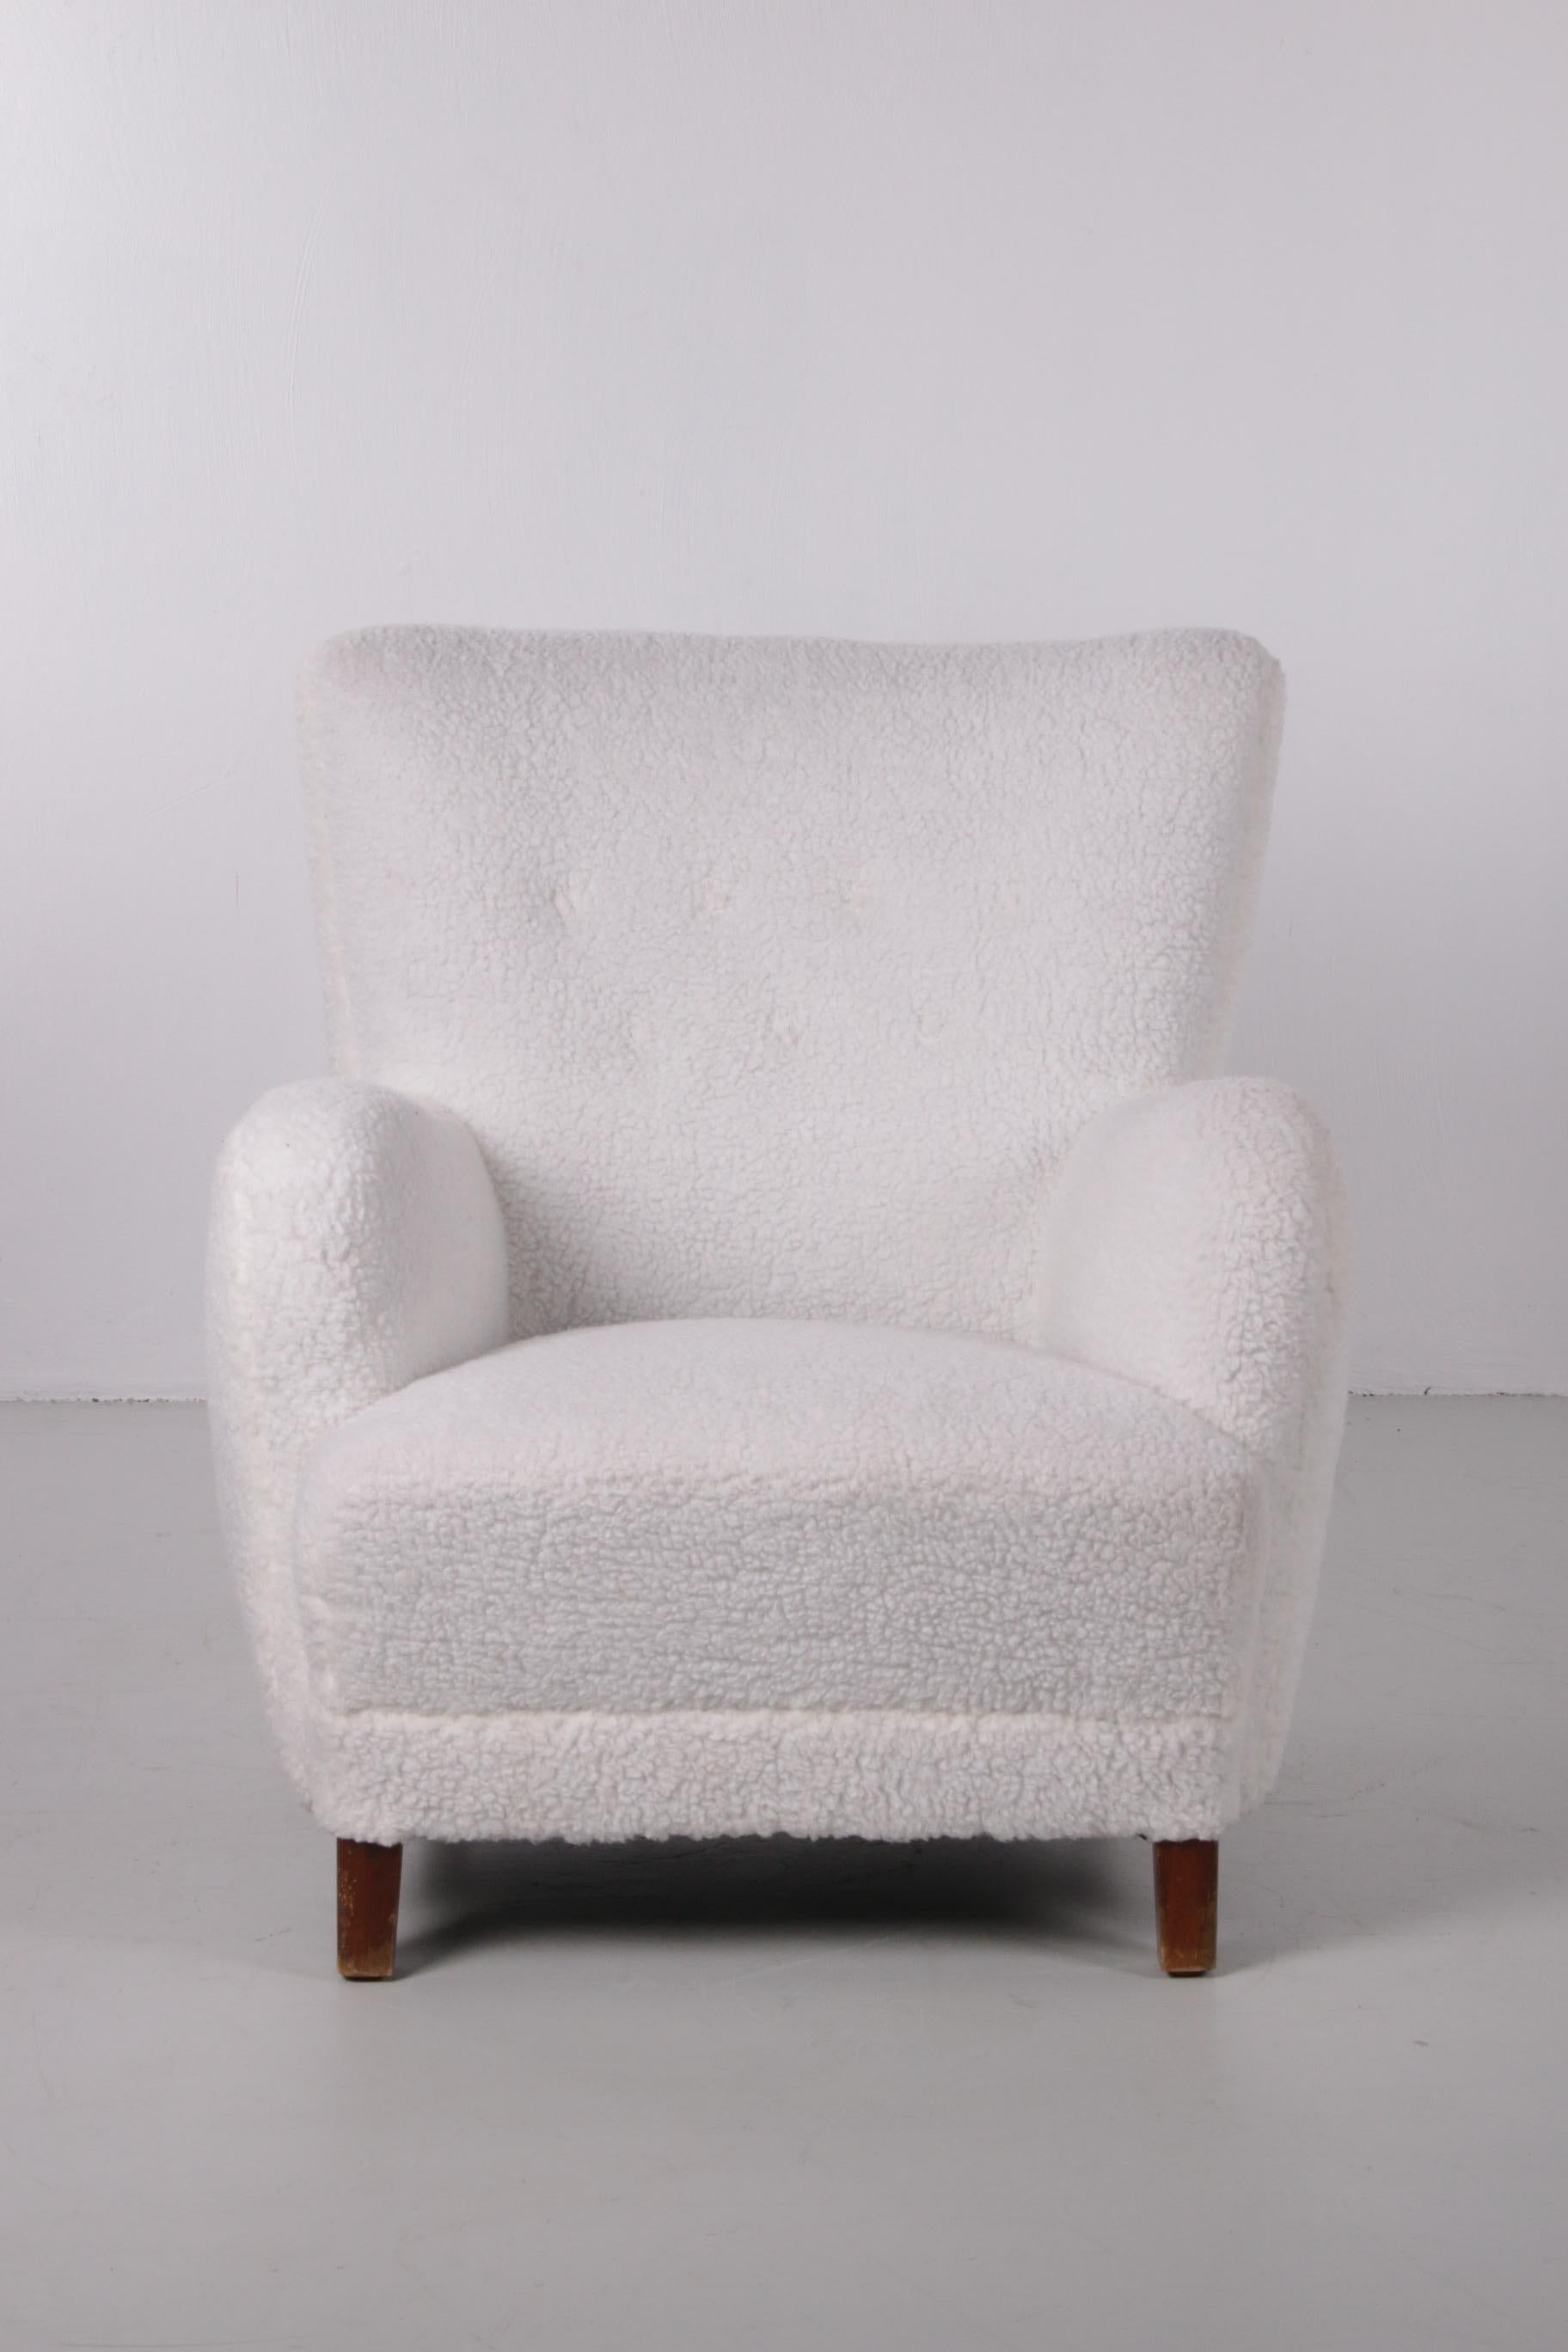 Fritz Hansen High Back Lounge Chair, Model 1669, Denmark, 1950 2